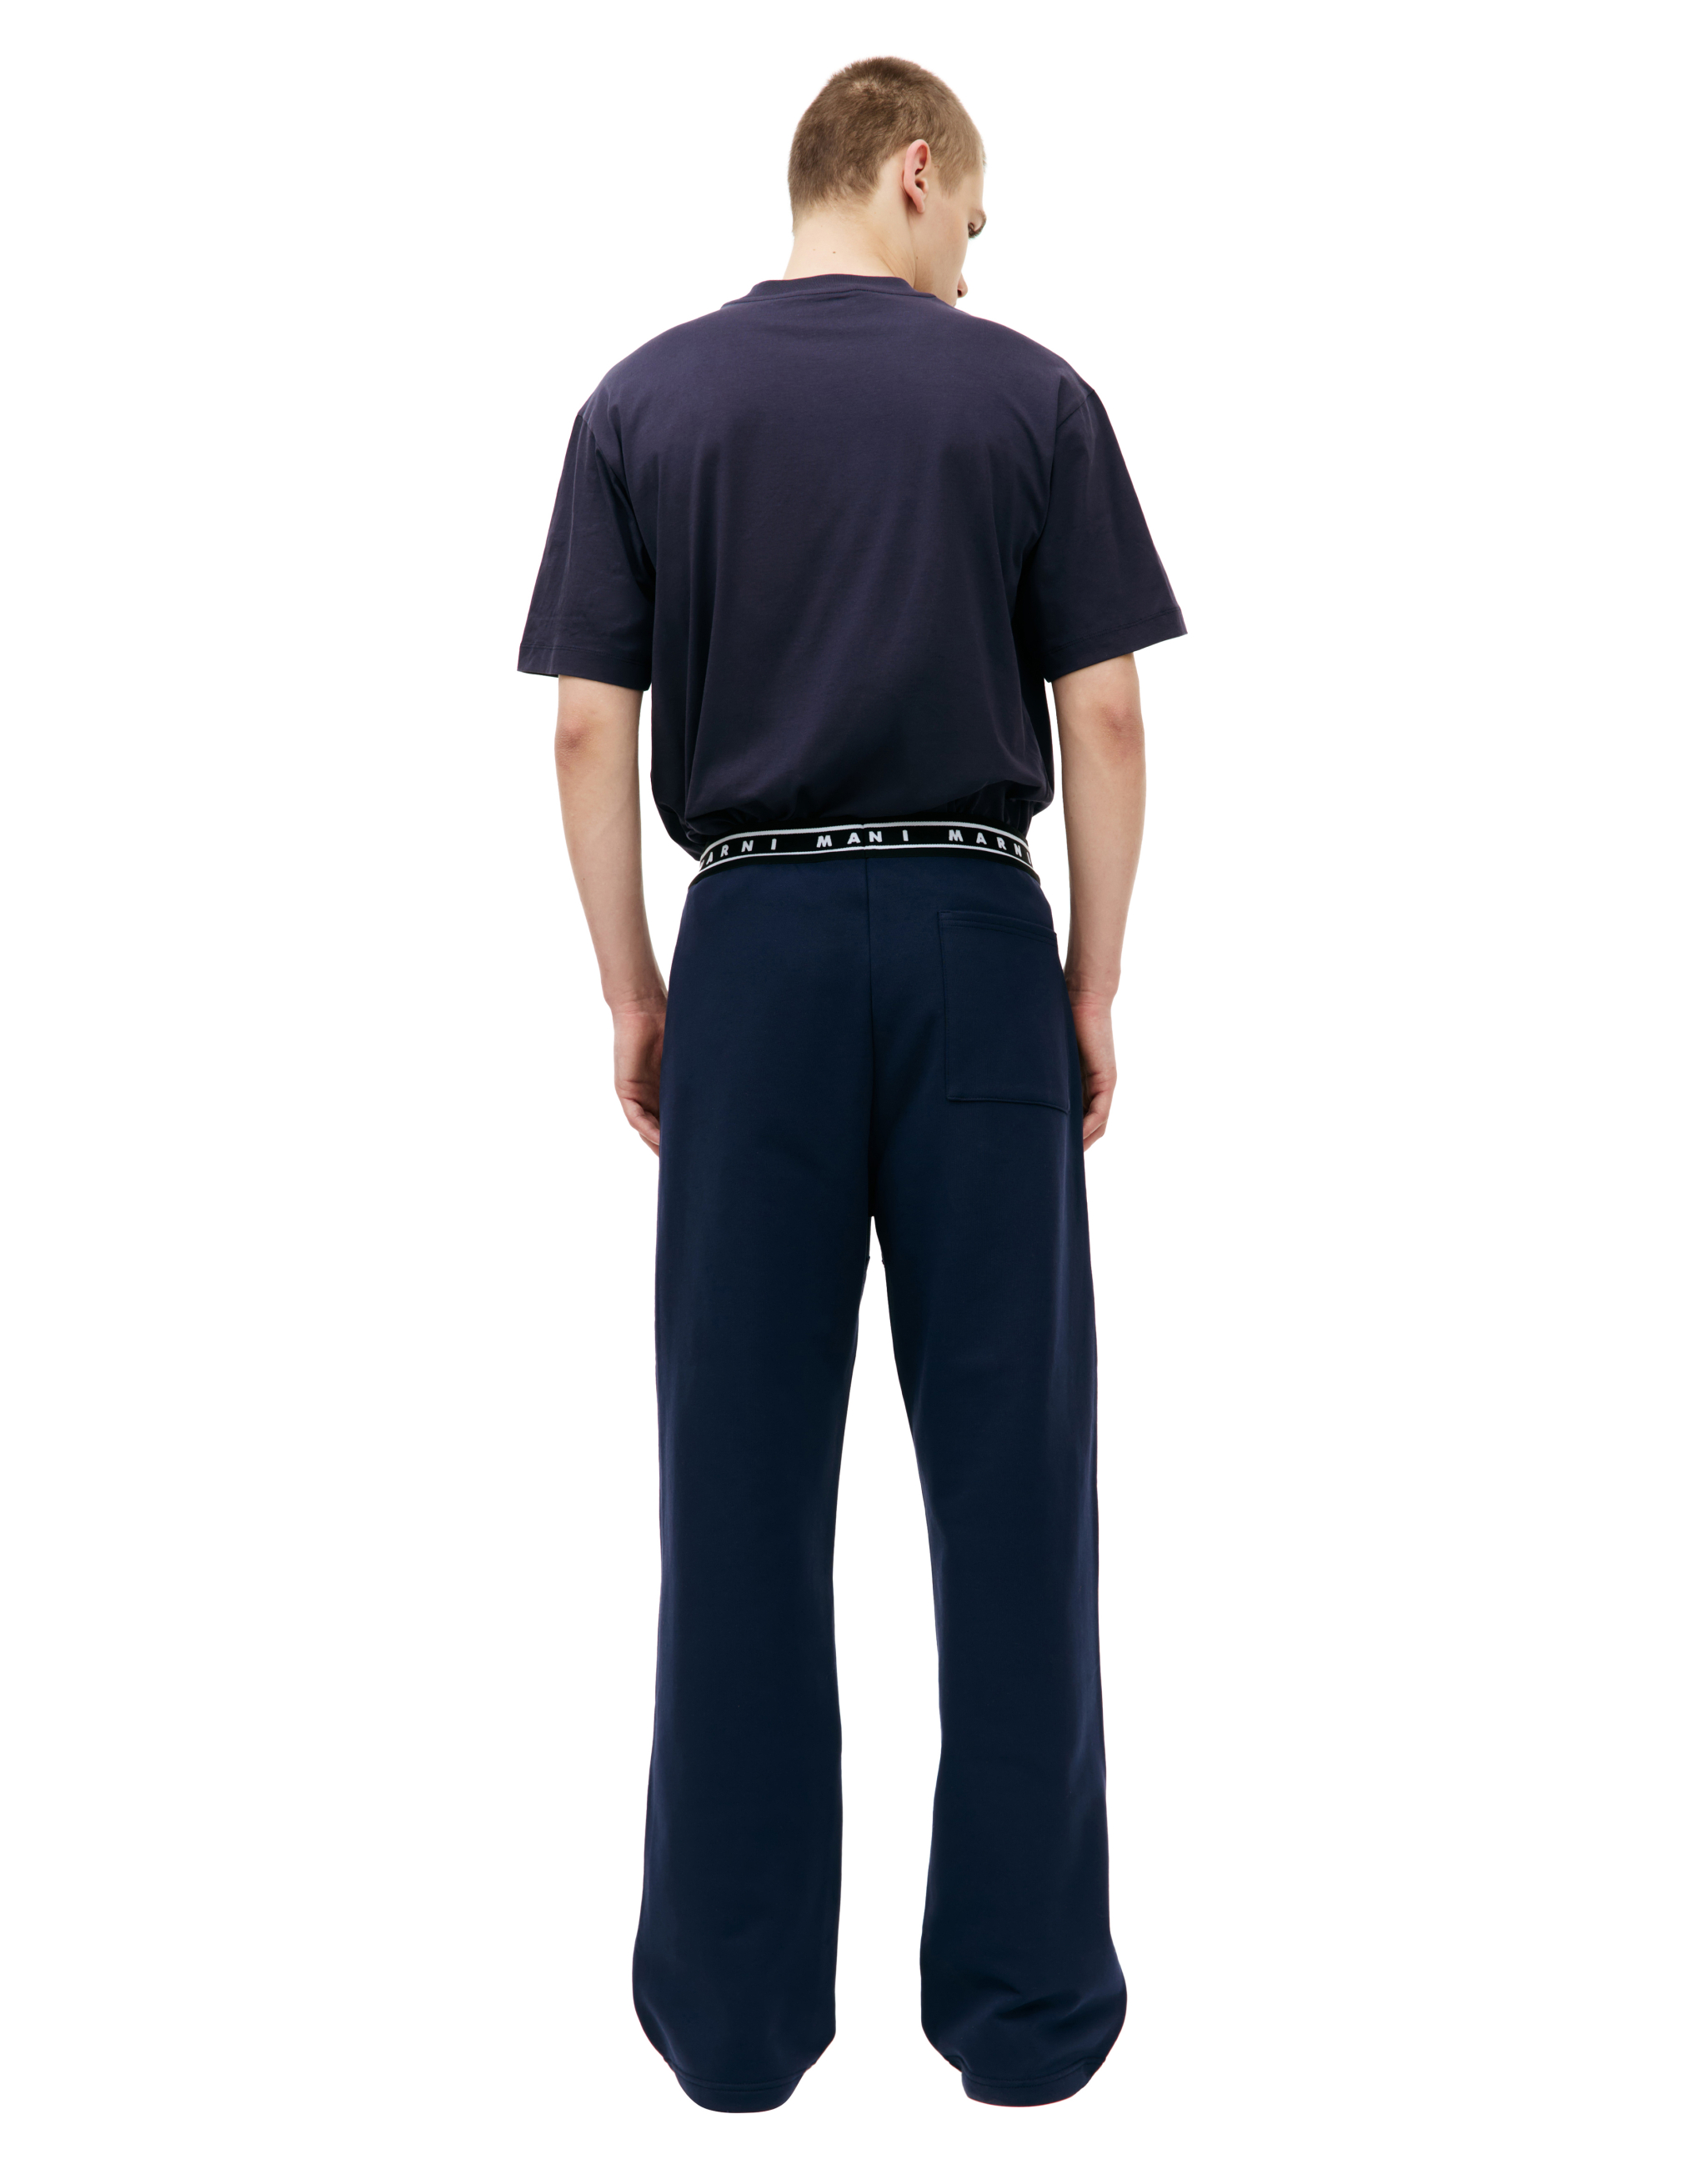 Прямые брюки с логотпом на резинке Marni PJMU0066Y0/UTC301/00B95, размер 48;50;52 PJMU0066Y0/UTC301/00B95 - фото 3